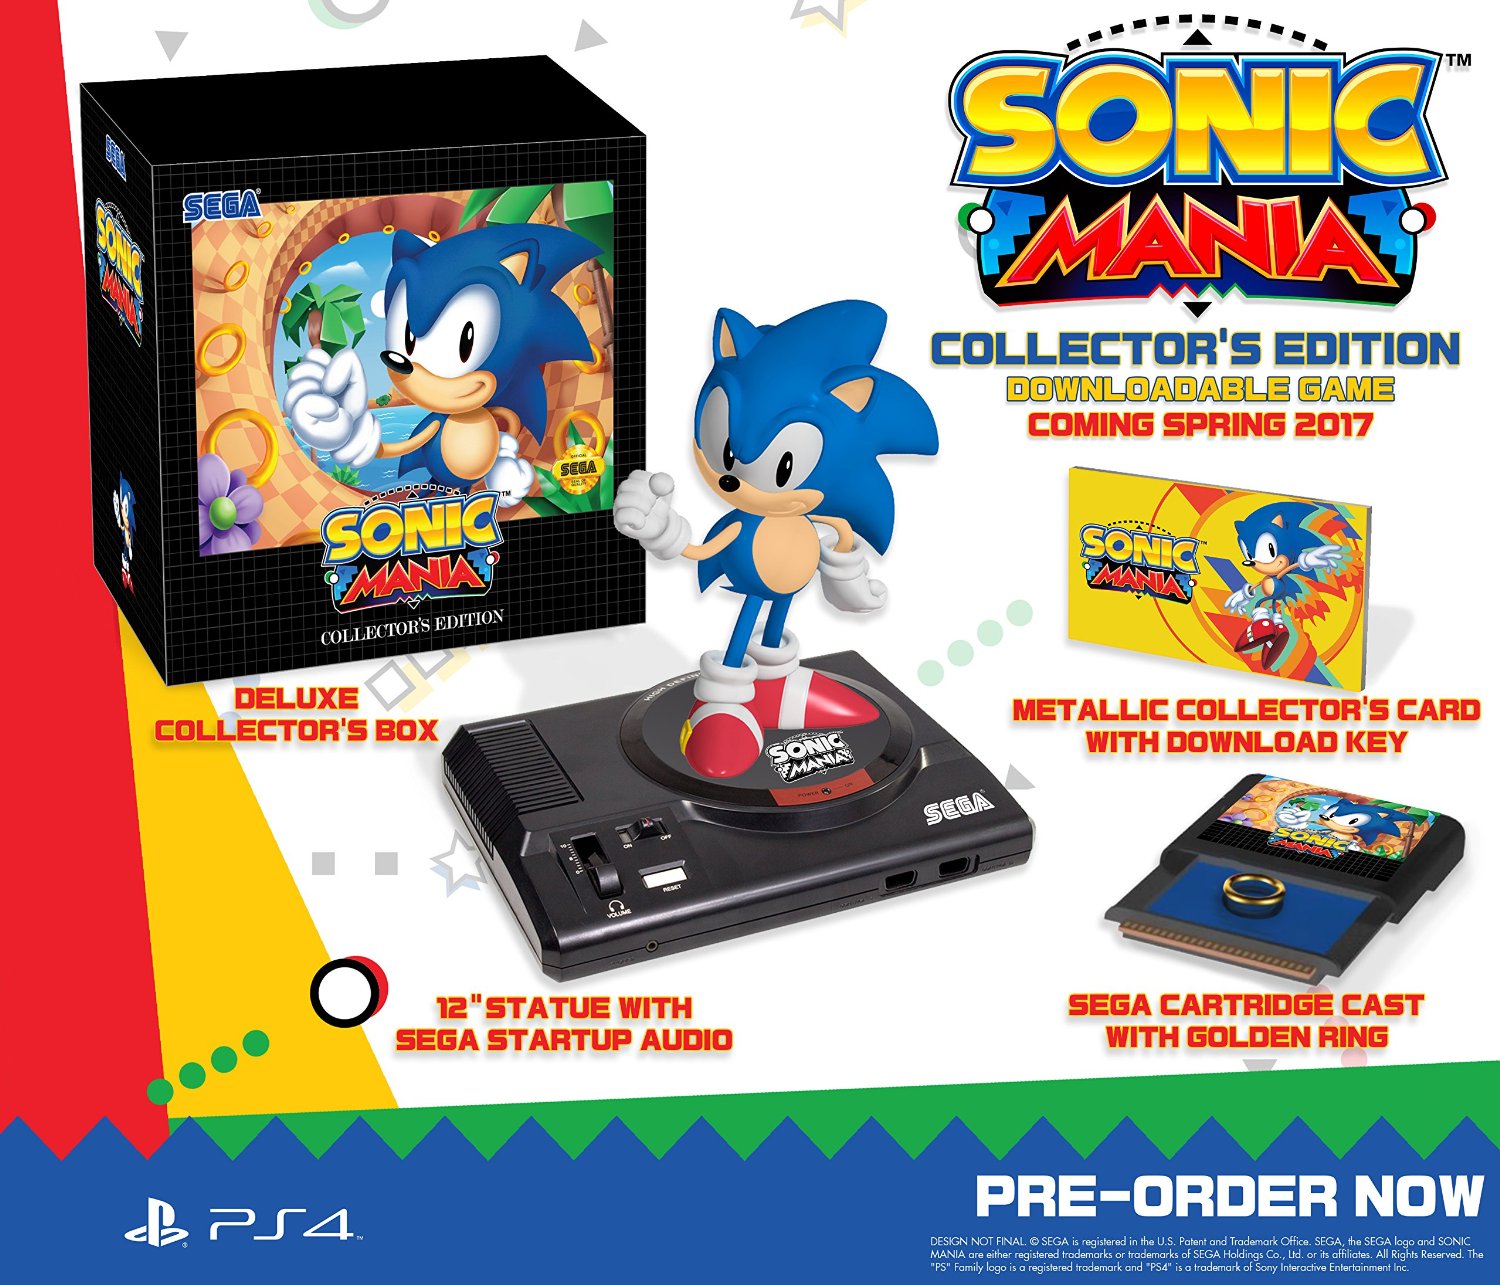 SEGA confirma que la edición para coleccionistas de Sonic Mania llegará a Europa